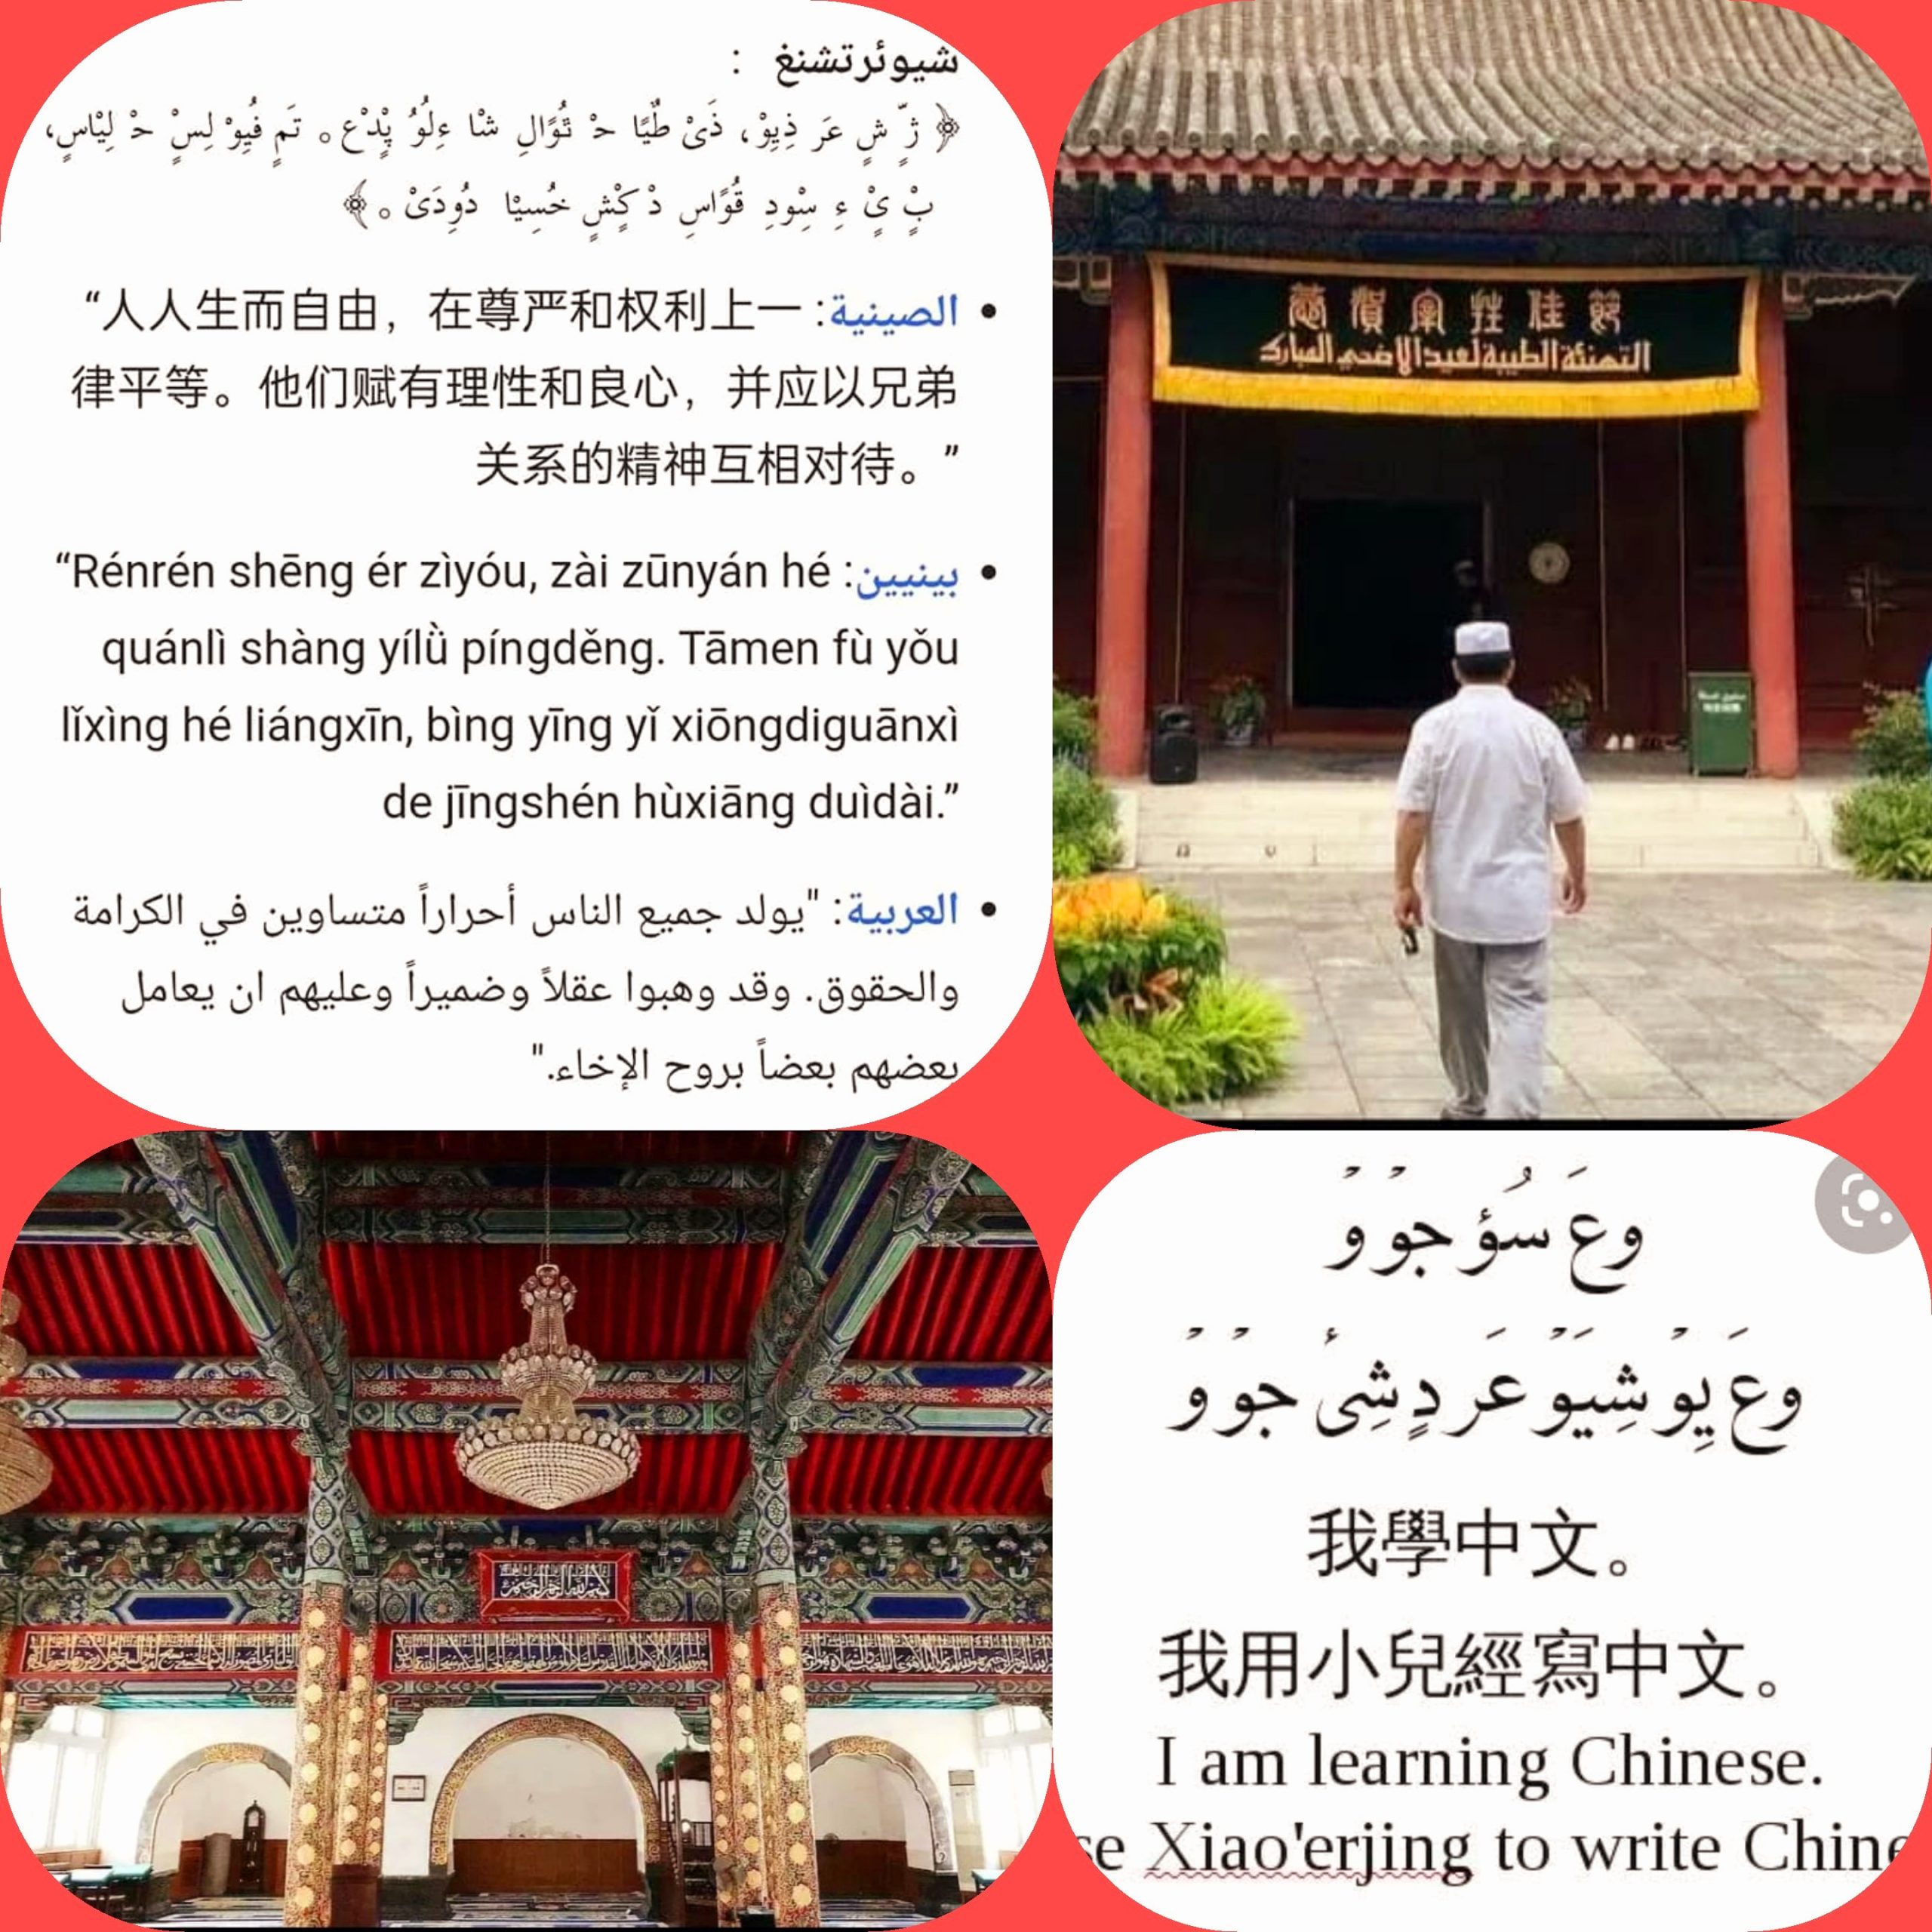 «شيوئرتشنغ» طريقة كتابة طورها مسلمو الصين من قومية "هوي" في مدارسهم الدينية في القرن السادس عشر، لكتابة حواشي وتفاسير للكتب الدينية المكتوبة بالعربية.